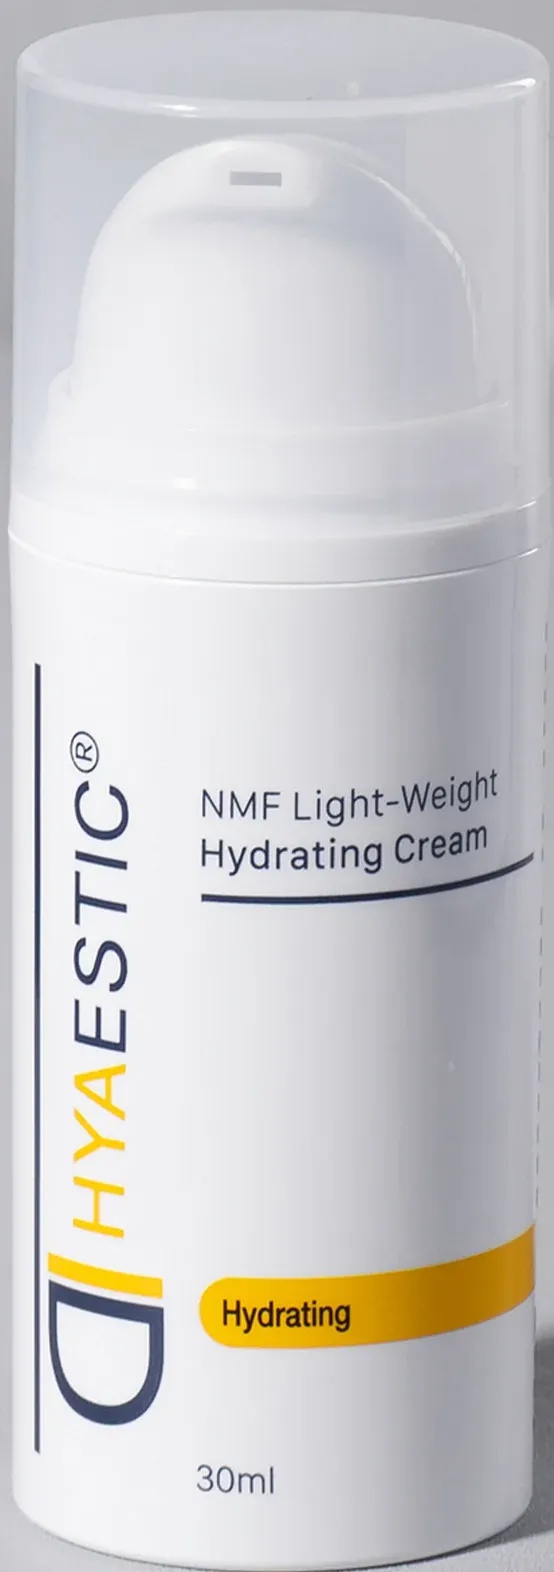 Hyaestic Nmf Light-weight Hydrating Cream